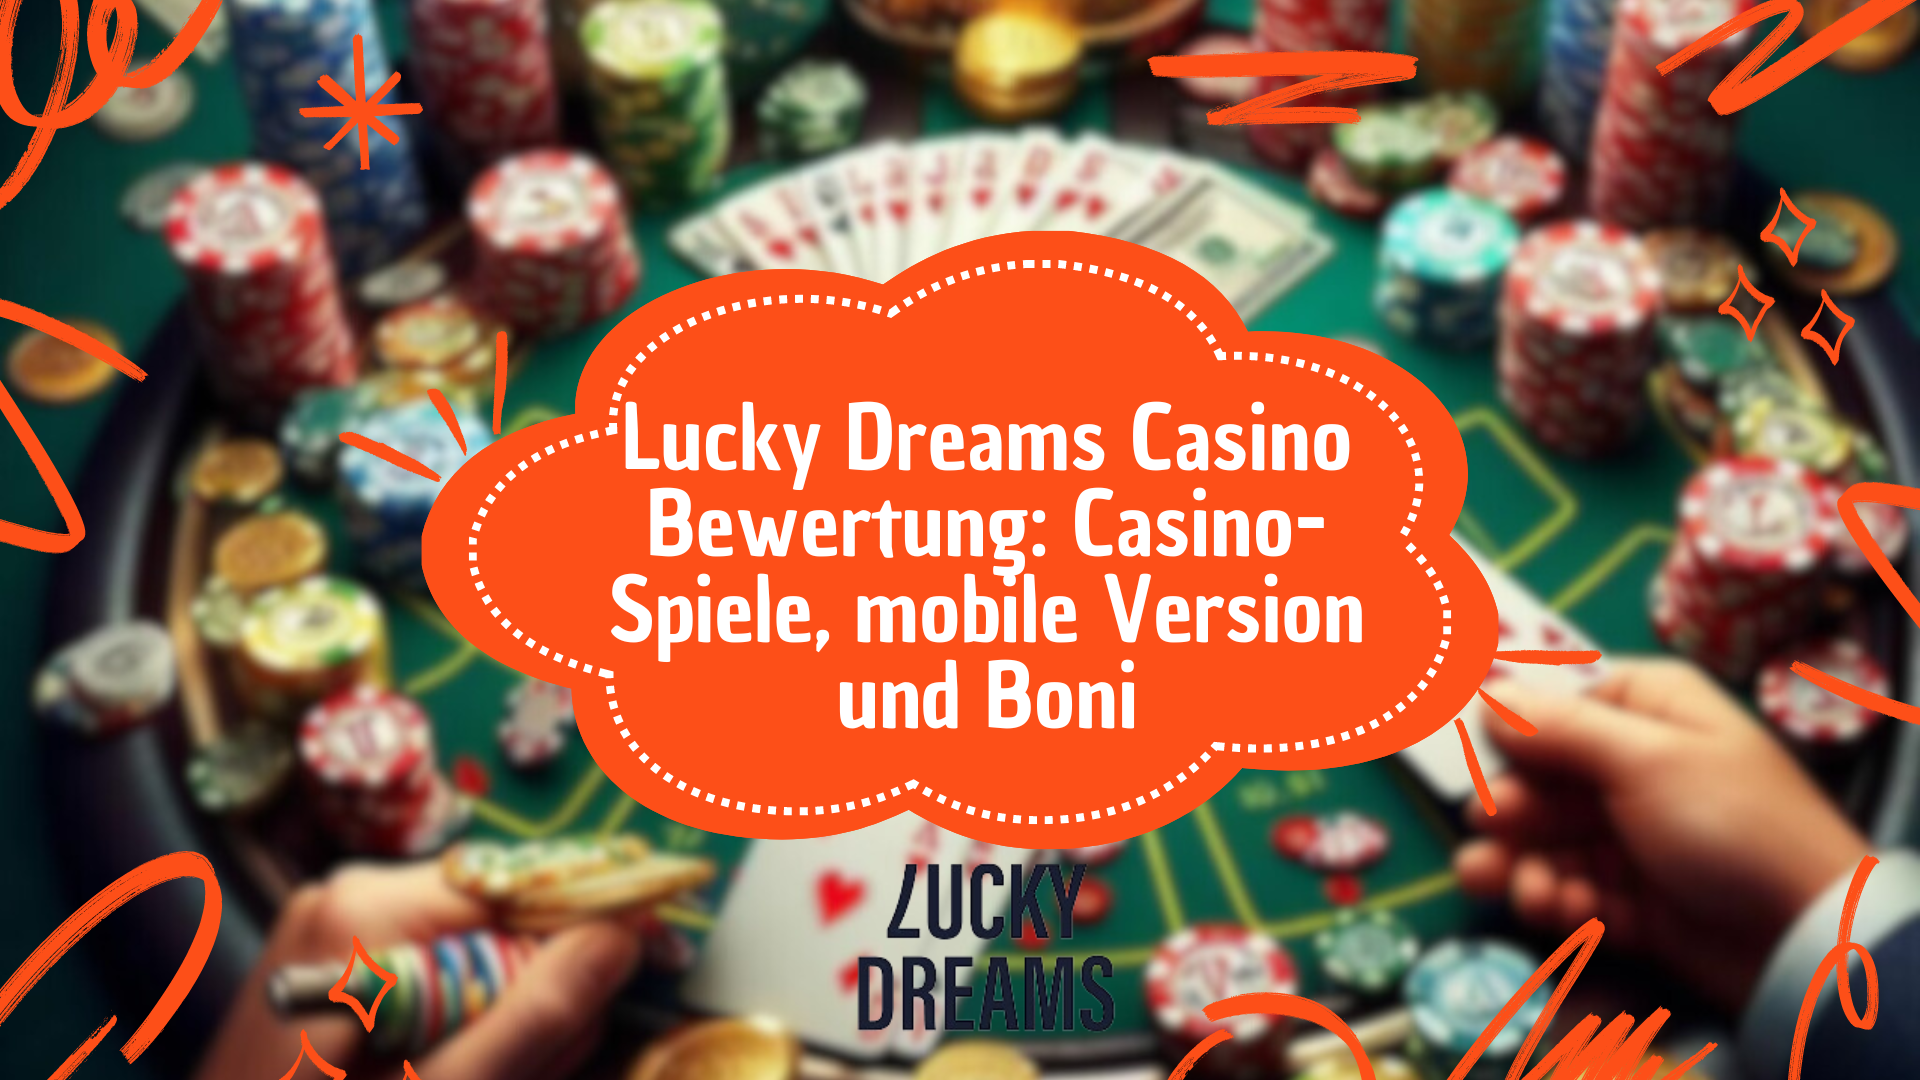 Lucky Dreams Casino Bewertung: Casino-Spiele, mobile Version und Boni 